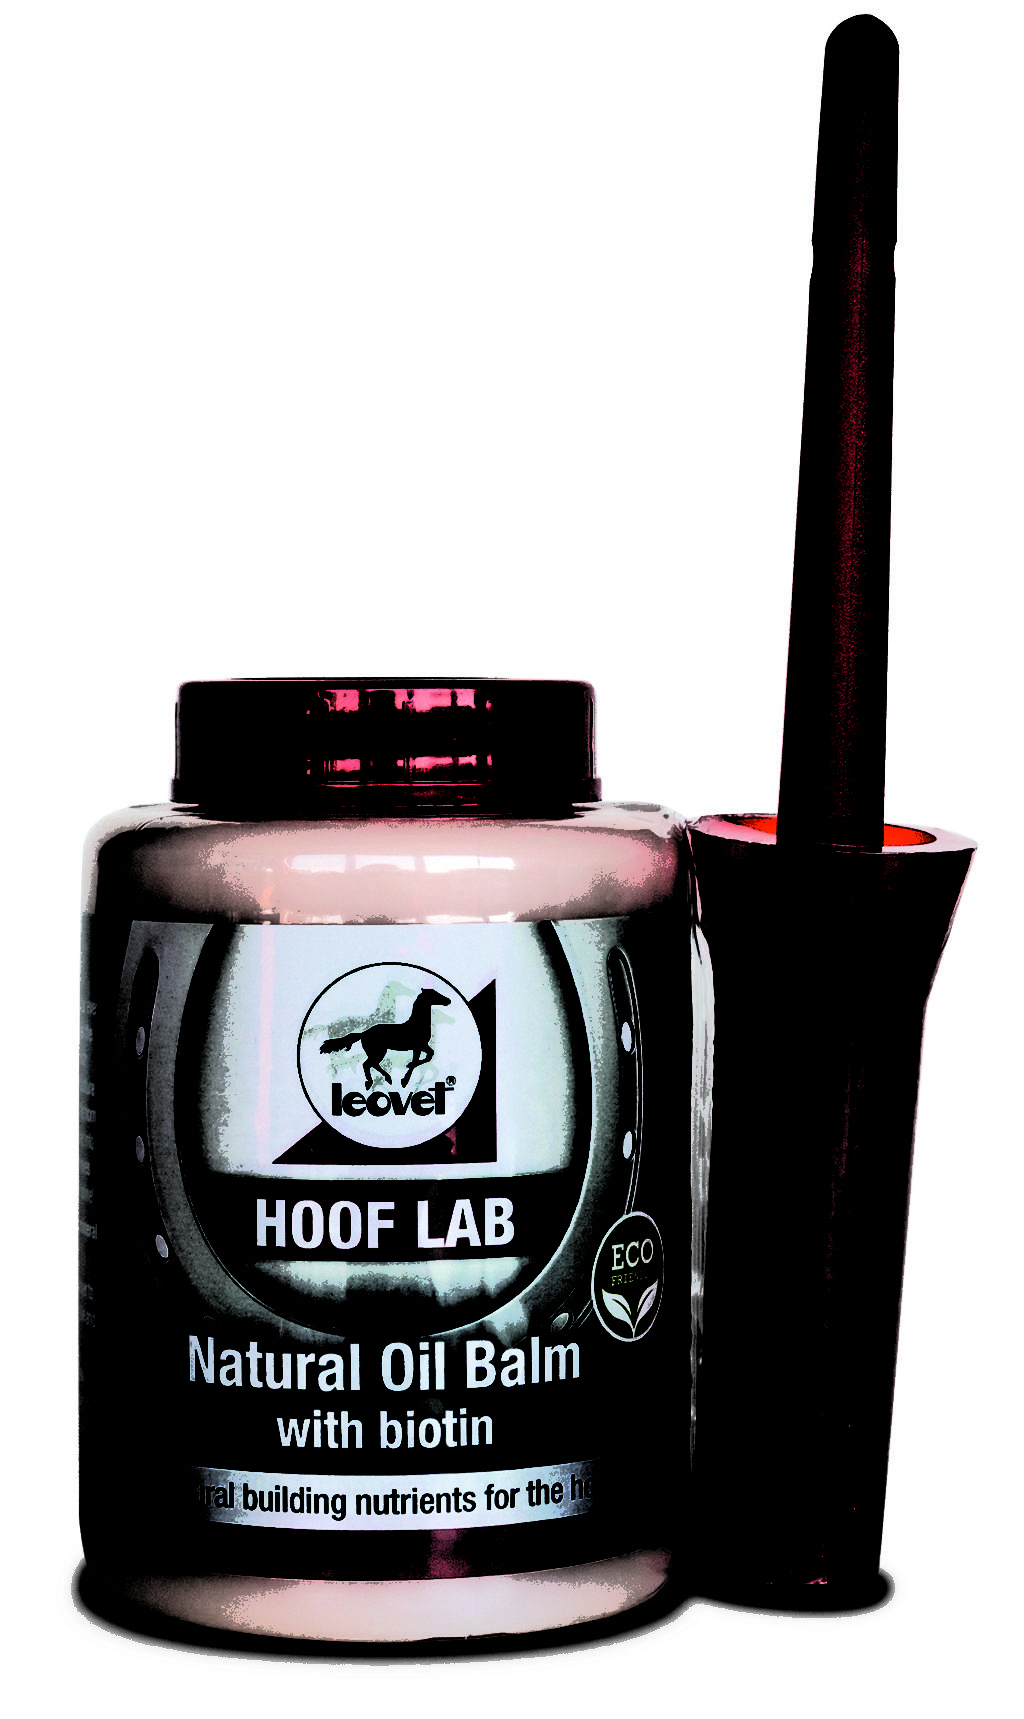 Leovet Hoof Lab Natural Oil Balm 500ml